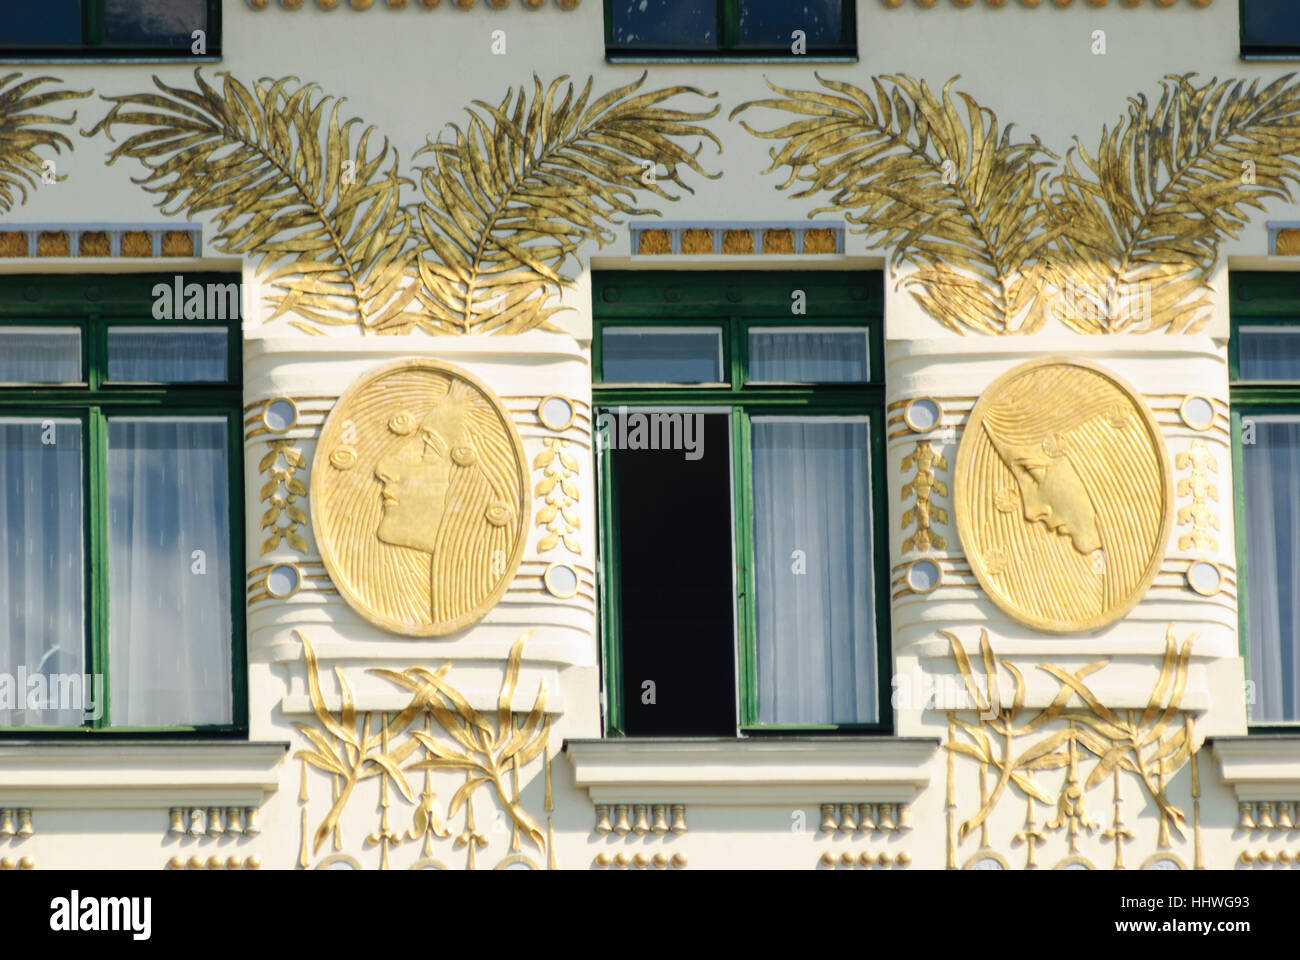 Wien, Wien: Haus Linke Wienzeile Nr. 38 vom Architekten Otto Wagner; Goldschmuck, 06., Wien, Österreich Stockfoto